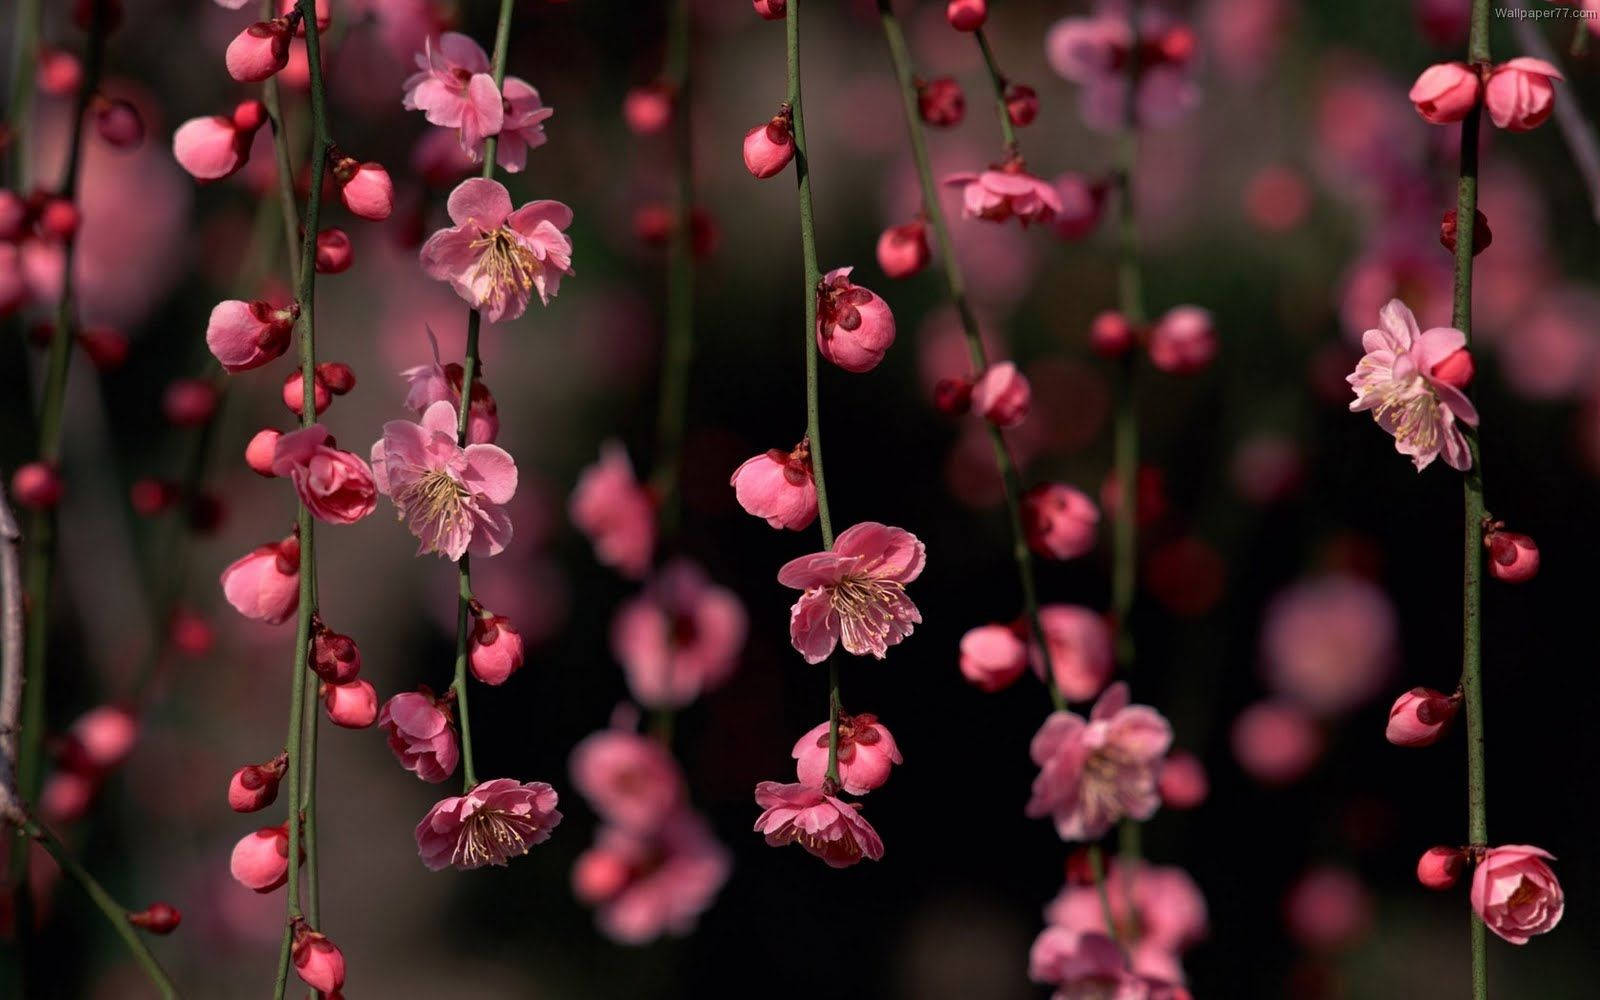 Enjoy a soft pink blooming flower Wallpaper